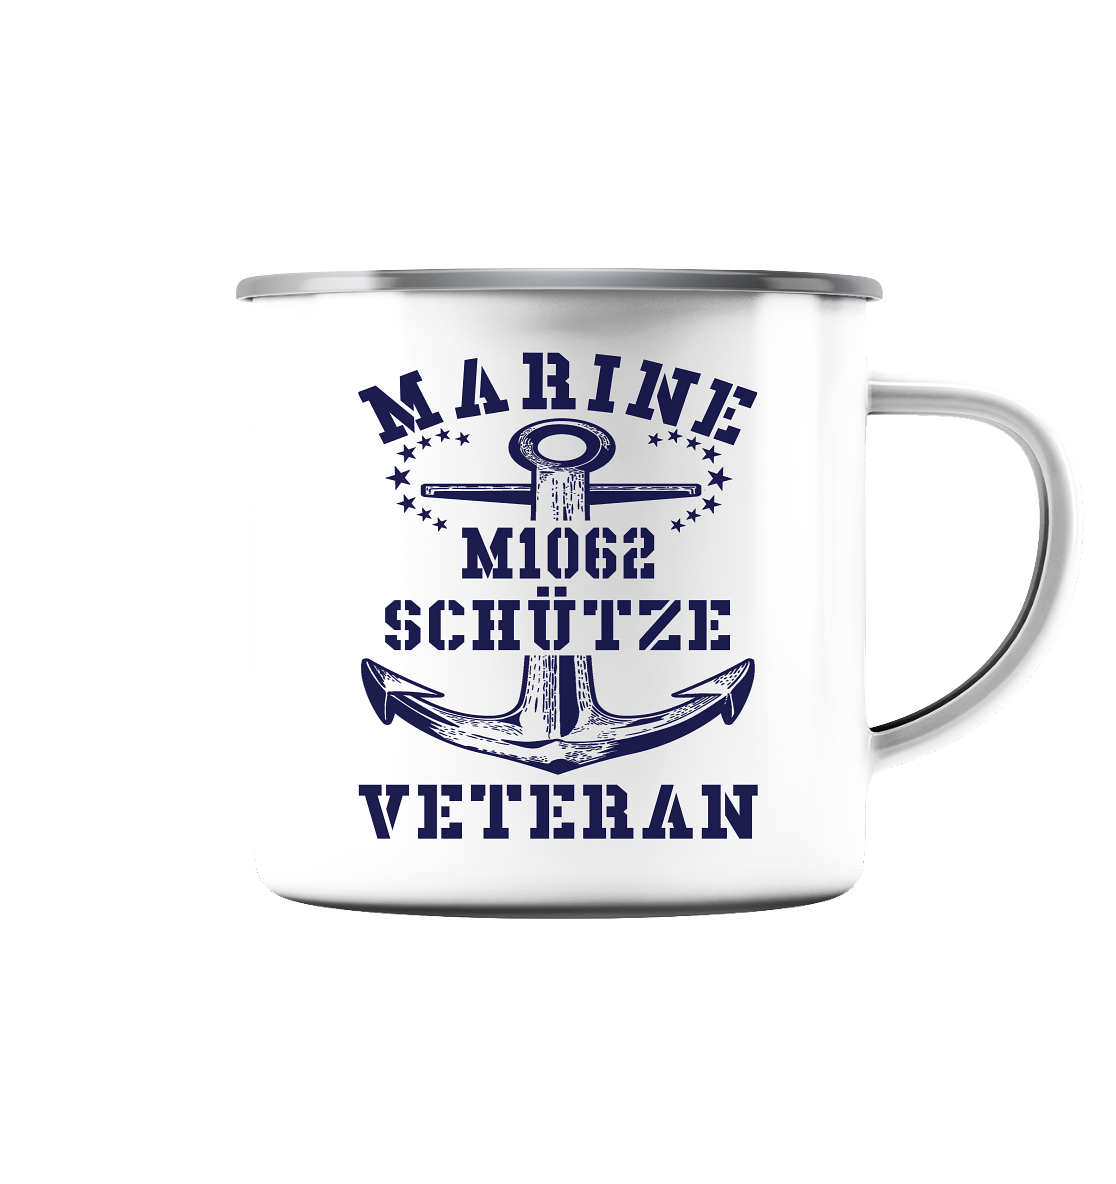 SM-Boot M1062 SCHÜTZE Marine Veteran - Emaille Tasse (Silber)